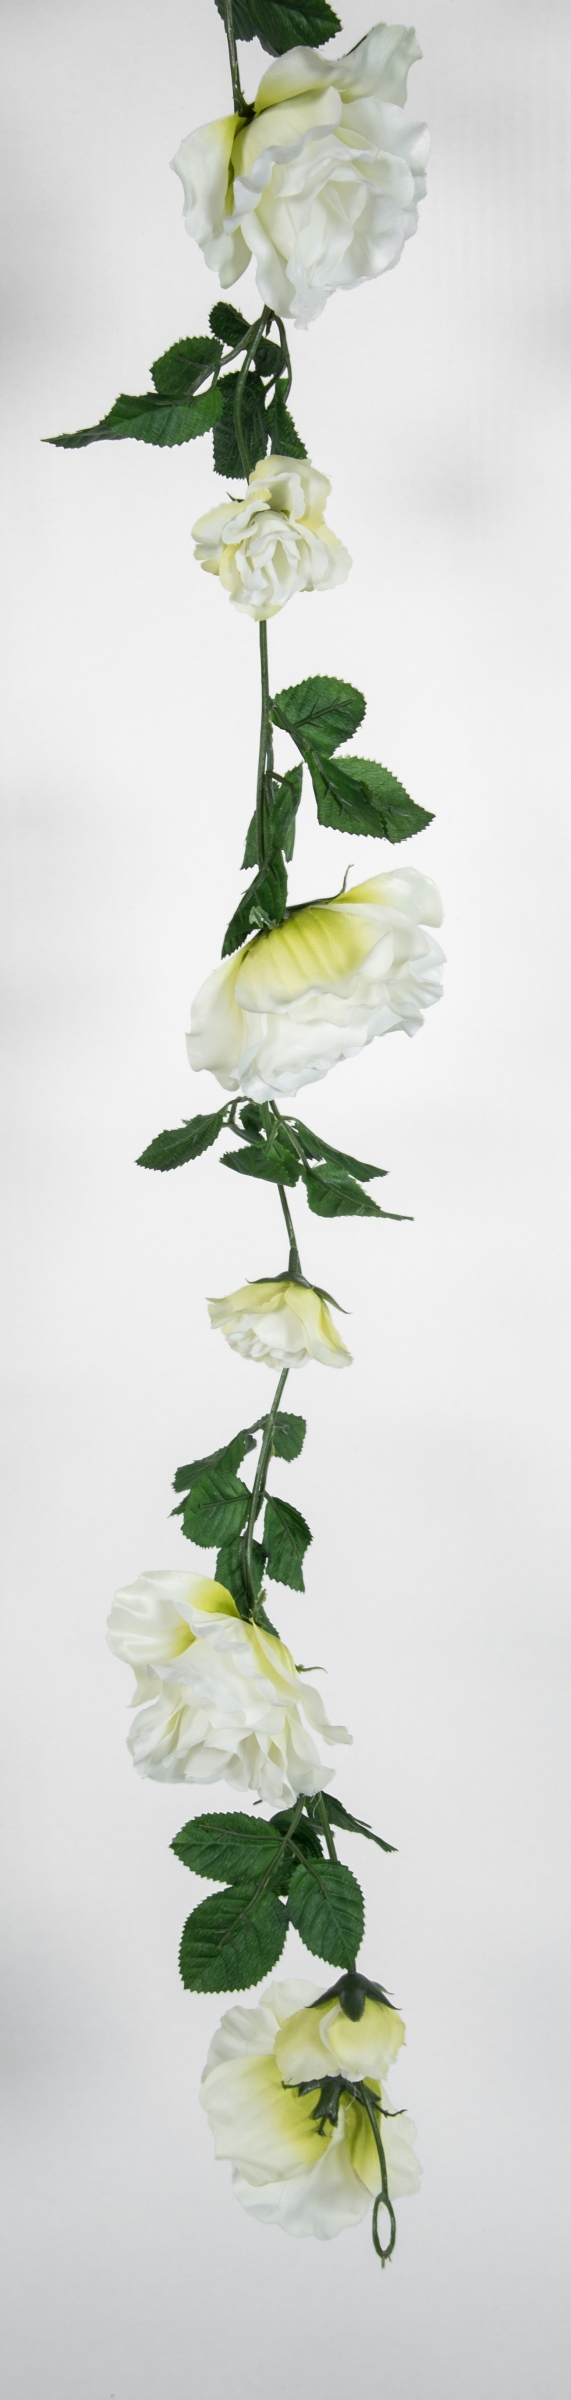 Rosengirlande 180cm 13 Girlande Blüten Seidenblumen weiß mit künstliche Rosen Kunstblumen GA